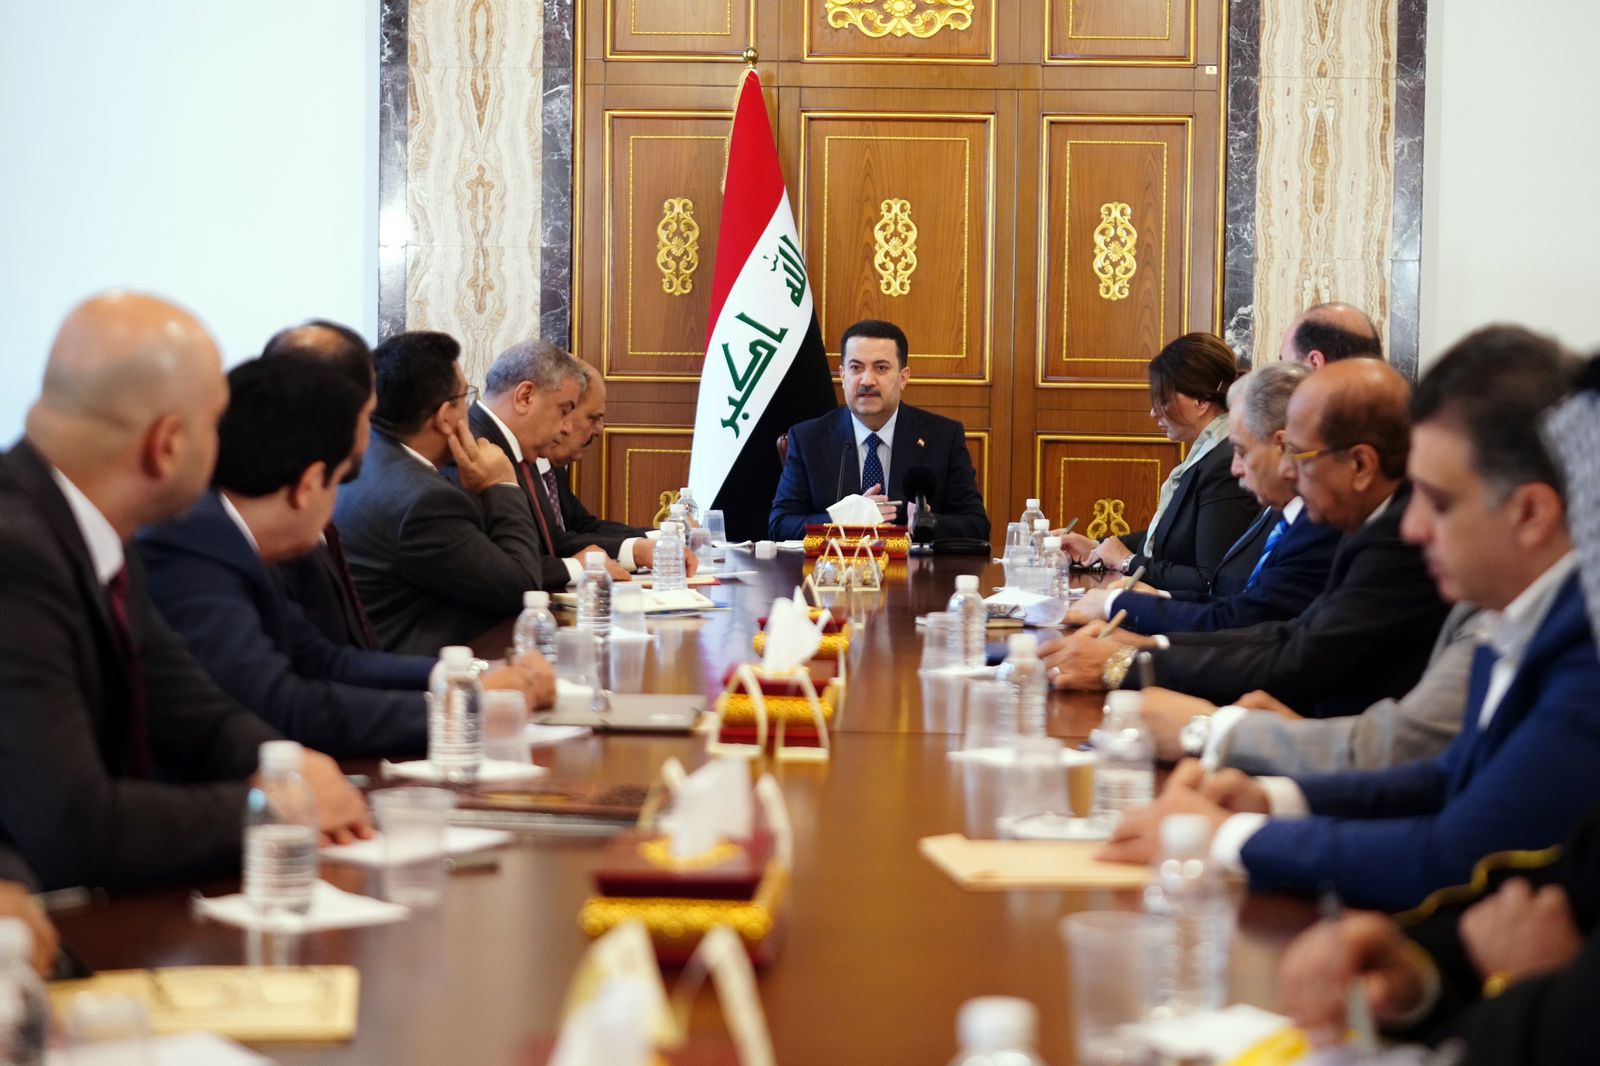 مجلس الوزراء العراقي يشرع بتأسيس لجنة عليا للتنسيق مع الاتحادات والنقابات